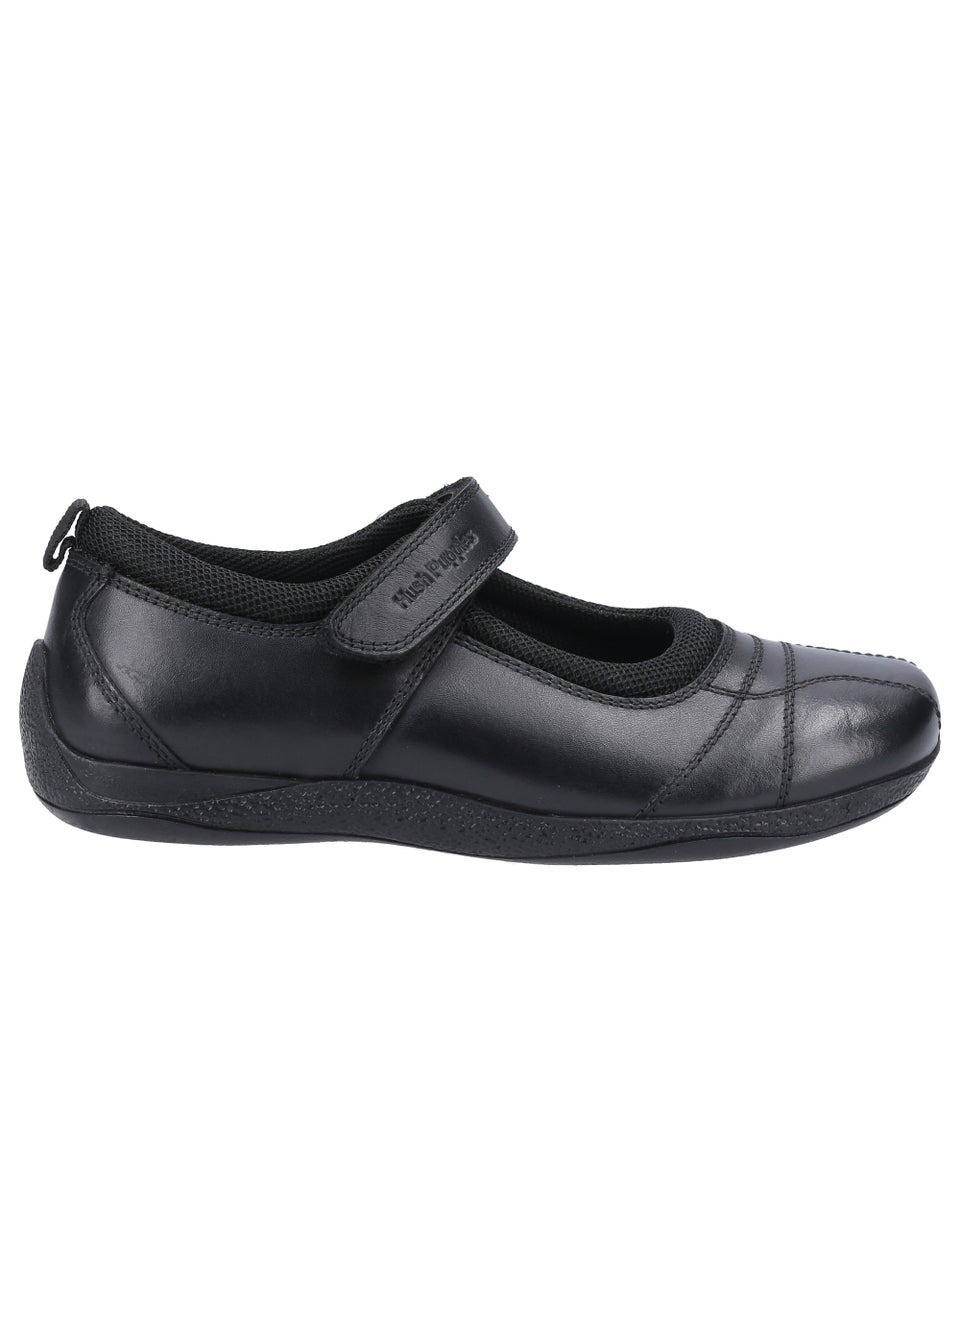 Черные школьные туфли для девочек Hush Puppies Junior (до 10 лет – от 2 лет) кроссовки hush puppies mason tan